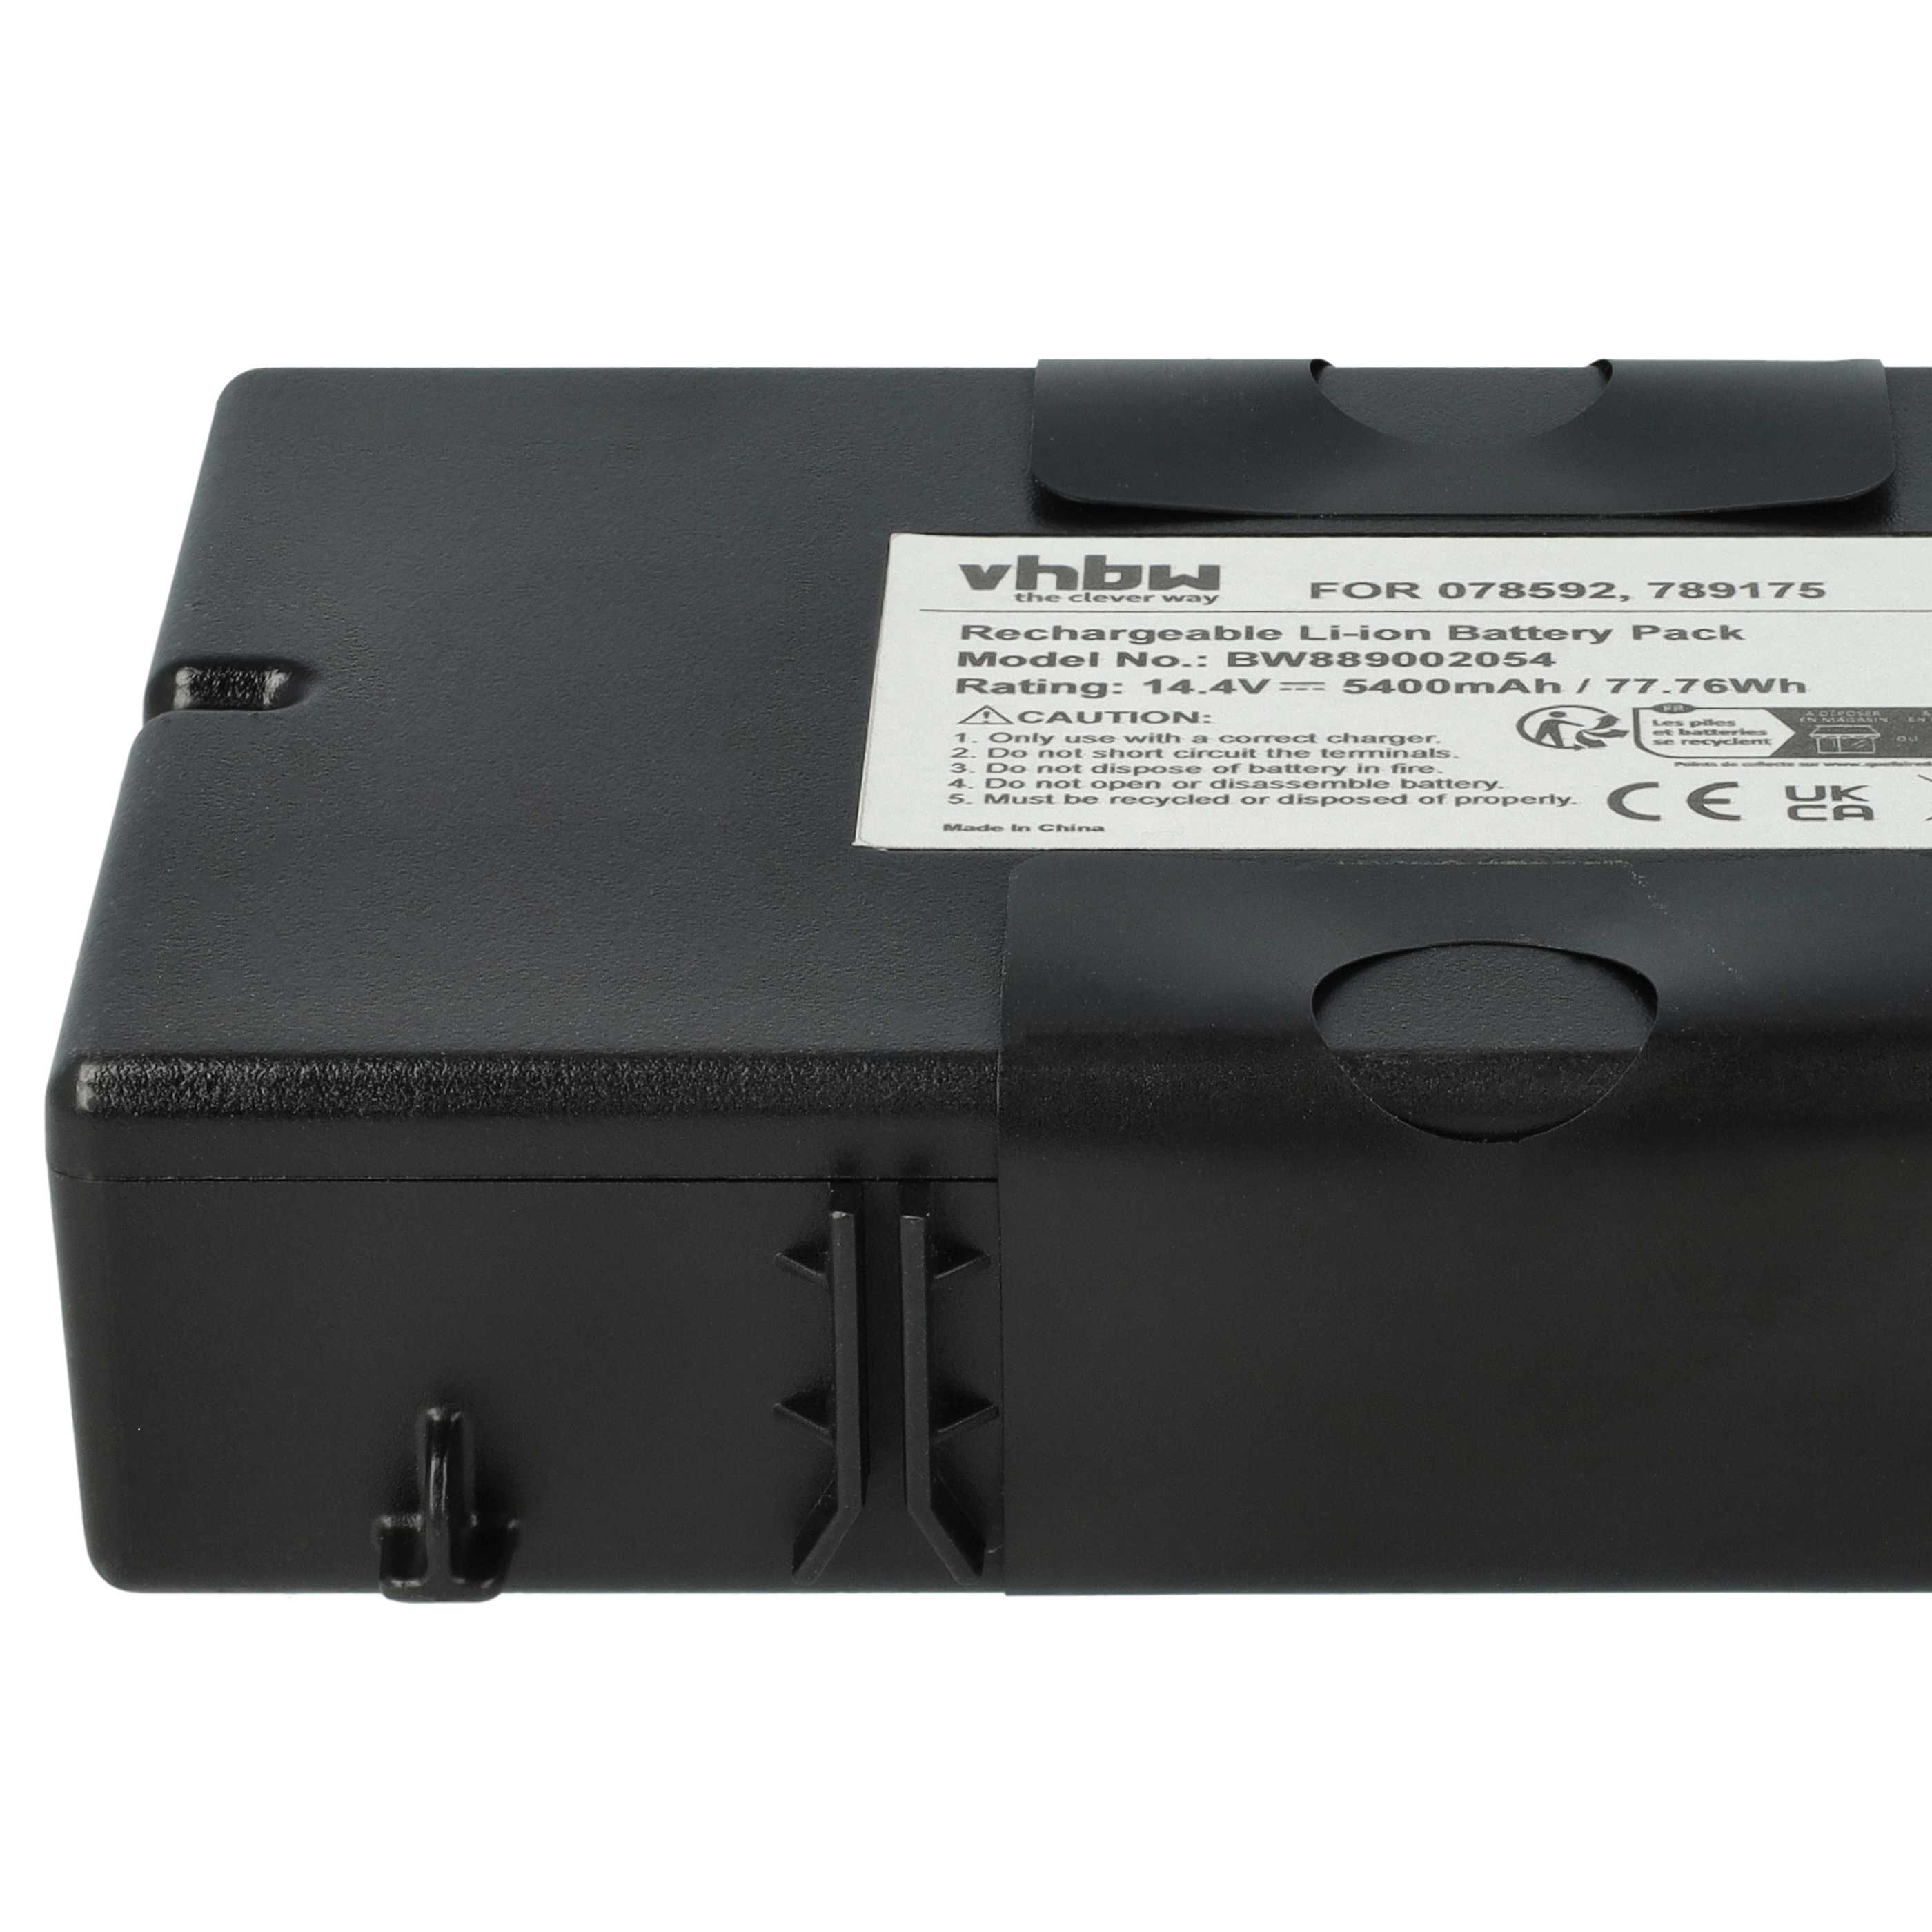 Batterie remplace Bose 789175, 7891750010, 078592 pour enceinte Bose - 5400mAh 14,4V Li-ion